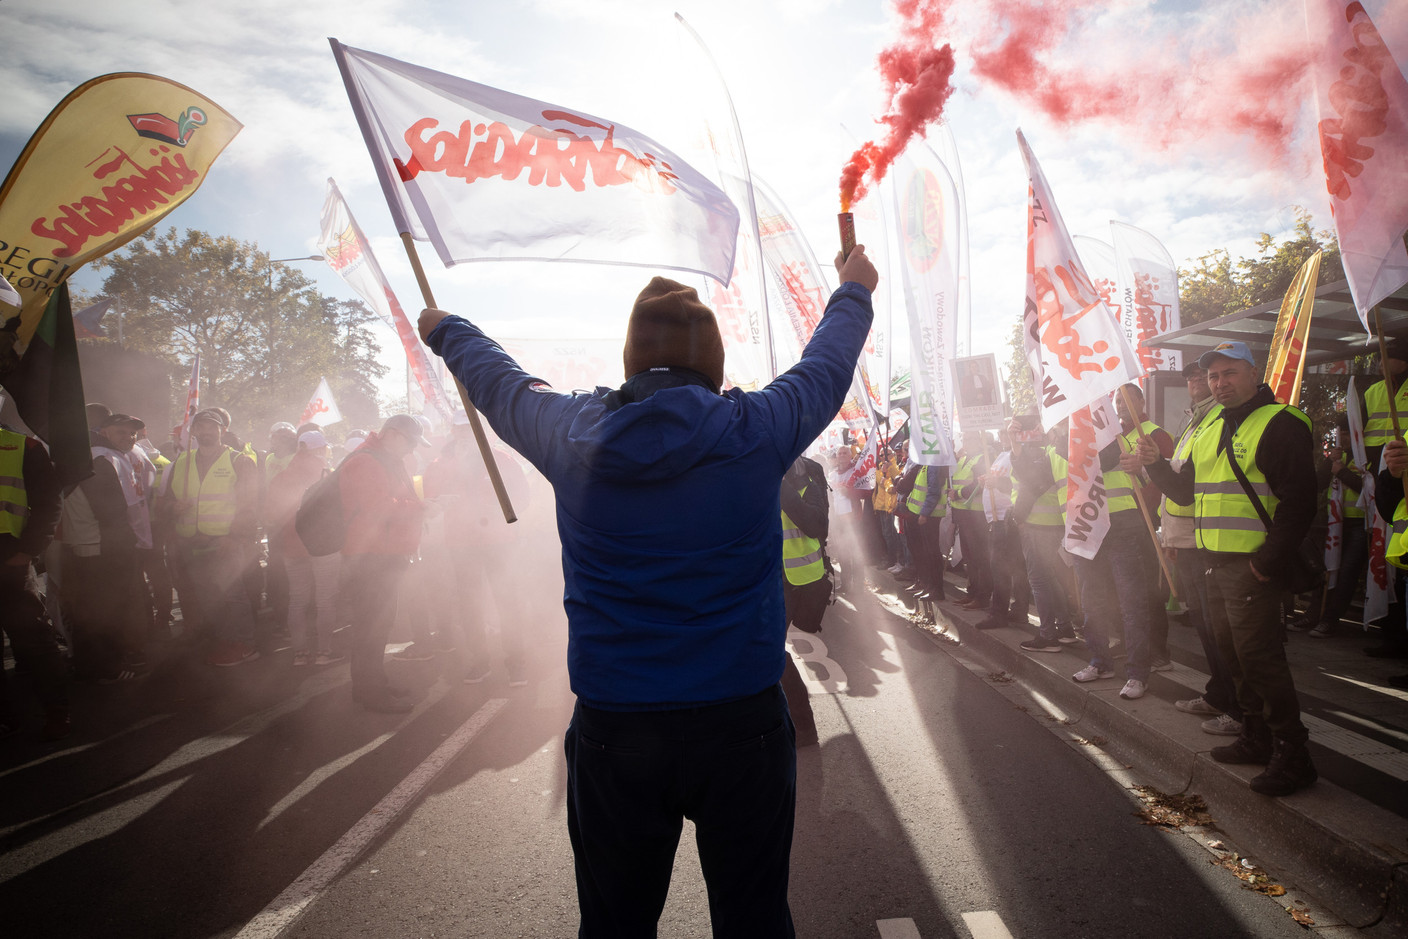 Le 22 octobre, plus d’un millier d’ouvriers polonais manifestent pacifiquement au Kirchberg pour protester contre la fermeture de leur usine, imposée par la CJUE. (Photo: Guy Wolff/Maison Moderne)